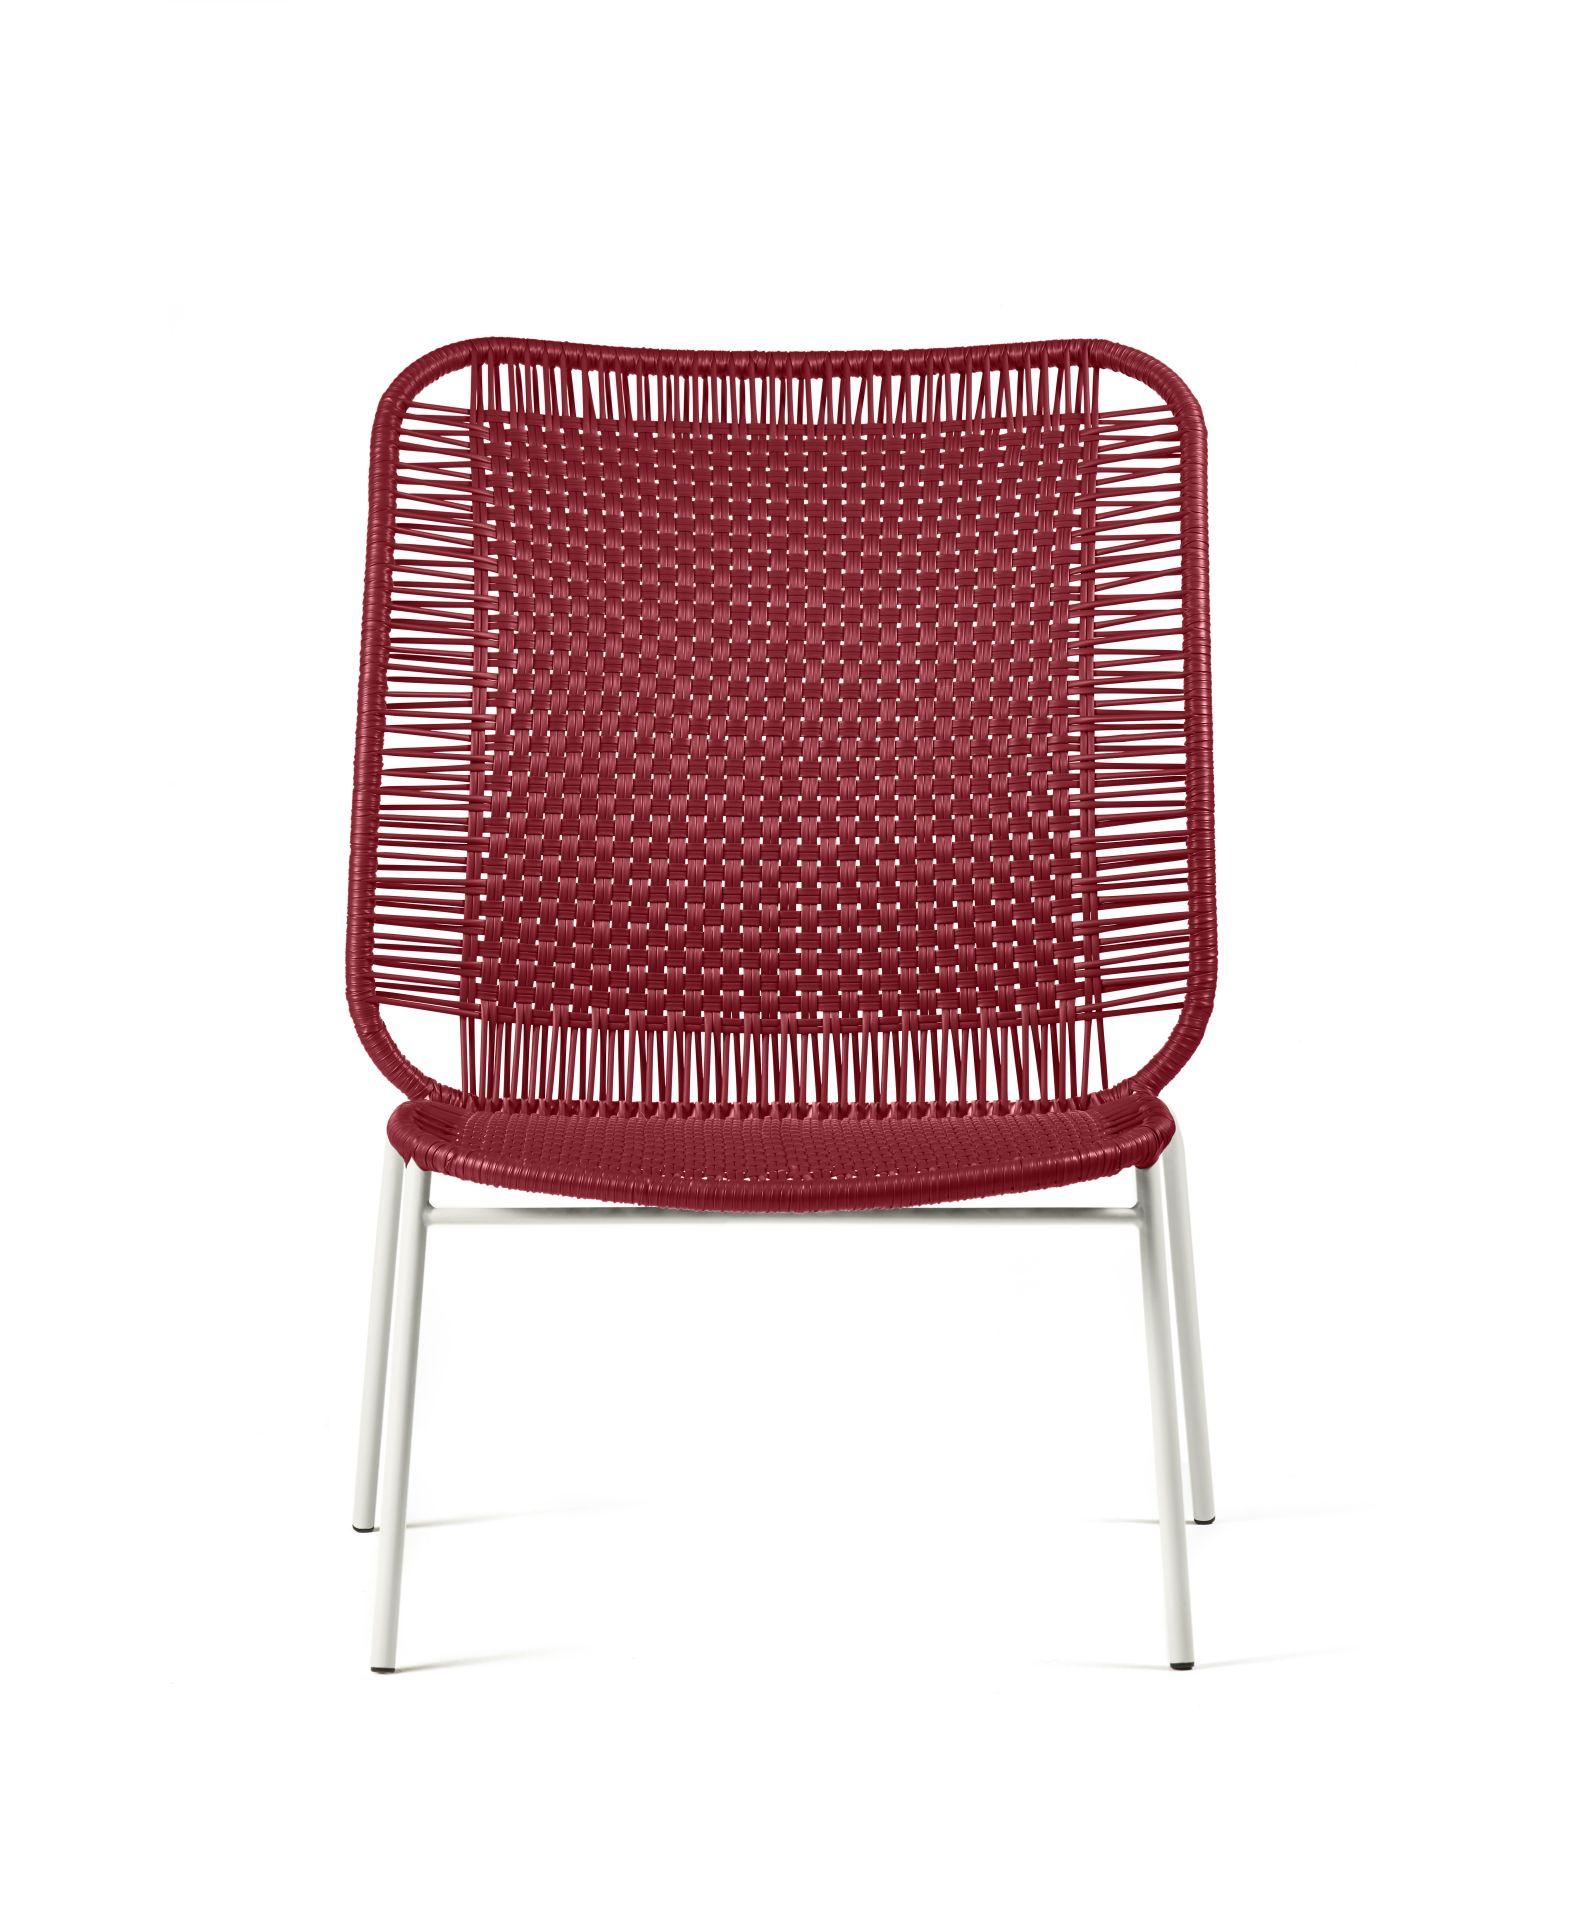 Design und Inspiration
Der Cielo Lounge Chair High ist ein leichter, vielseitiger und bequemer Entwurf von Sebastian Herkner. Er ist sowohl für den Innen- als auch für den Außenbereich geeignet und eignet sich hervorragend, um inspirierende